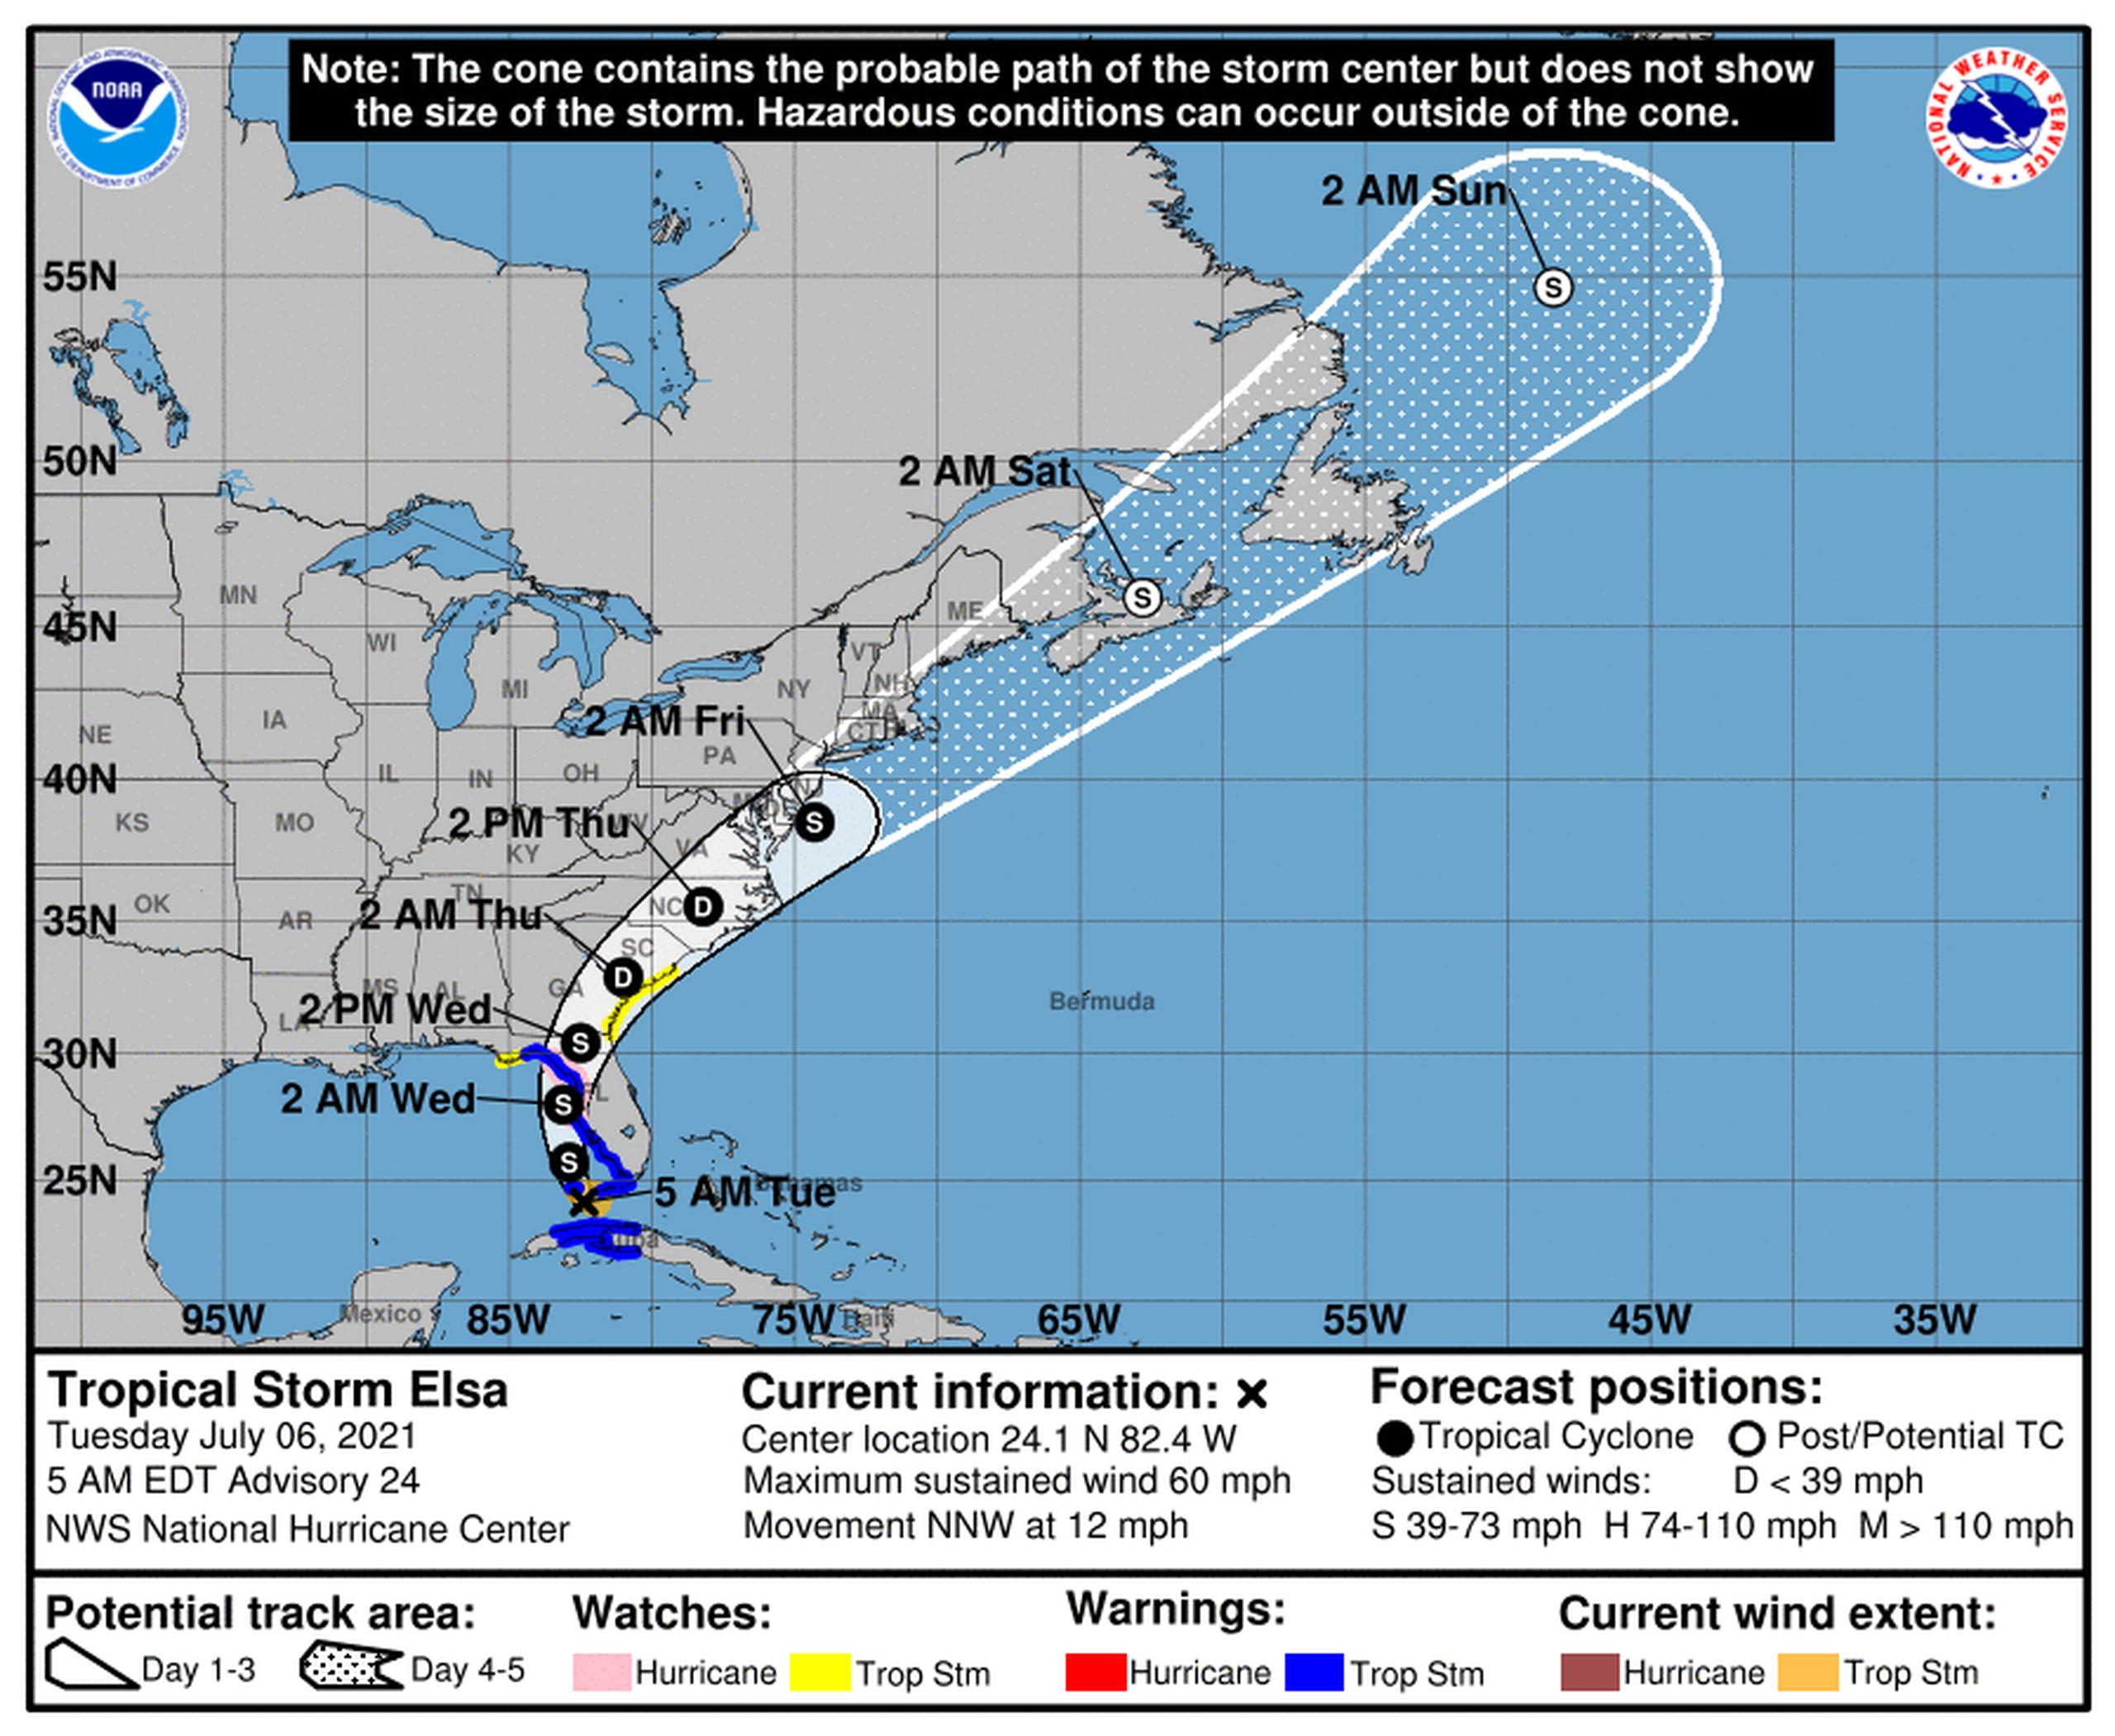 Pronósticos de la tormenta tropical Elsa emitido a las 5:00 de la mañana por el Centro Nacional de Huracanes de los Estados Unidos.